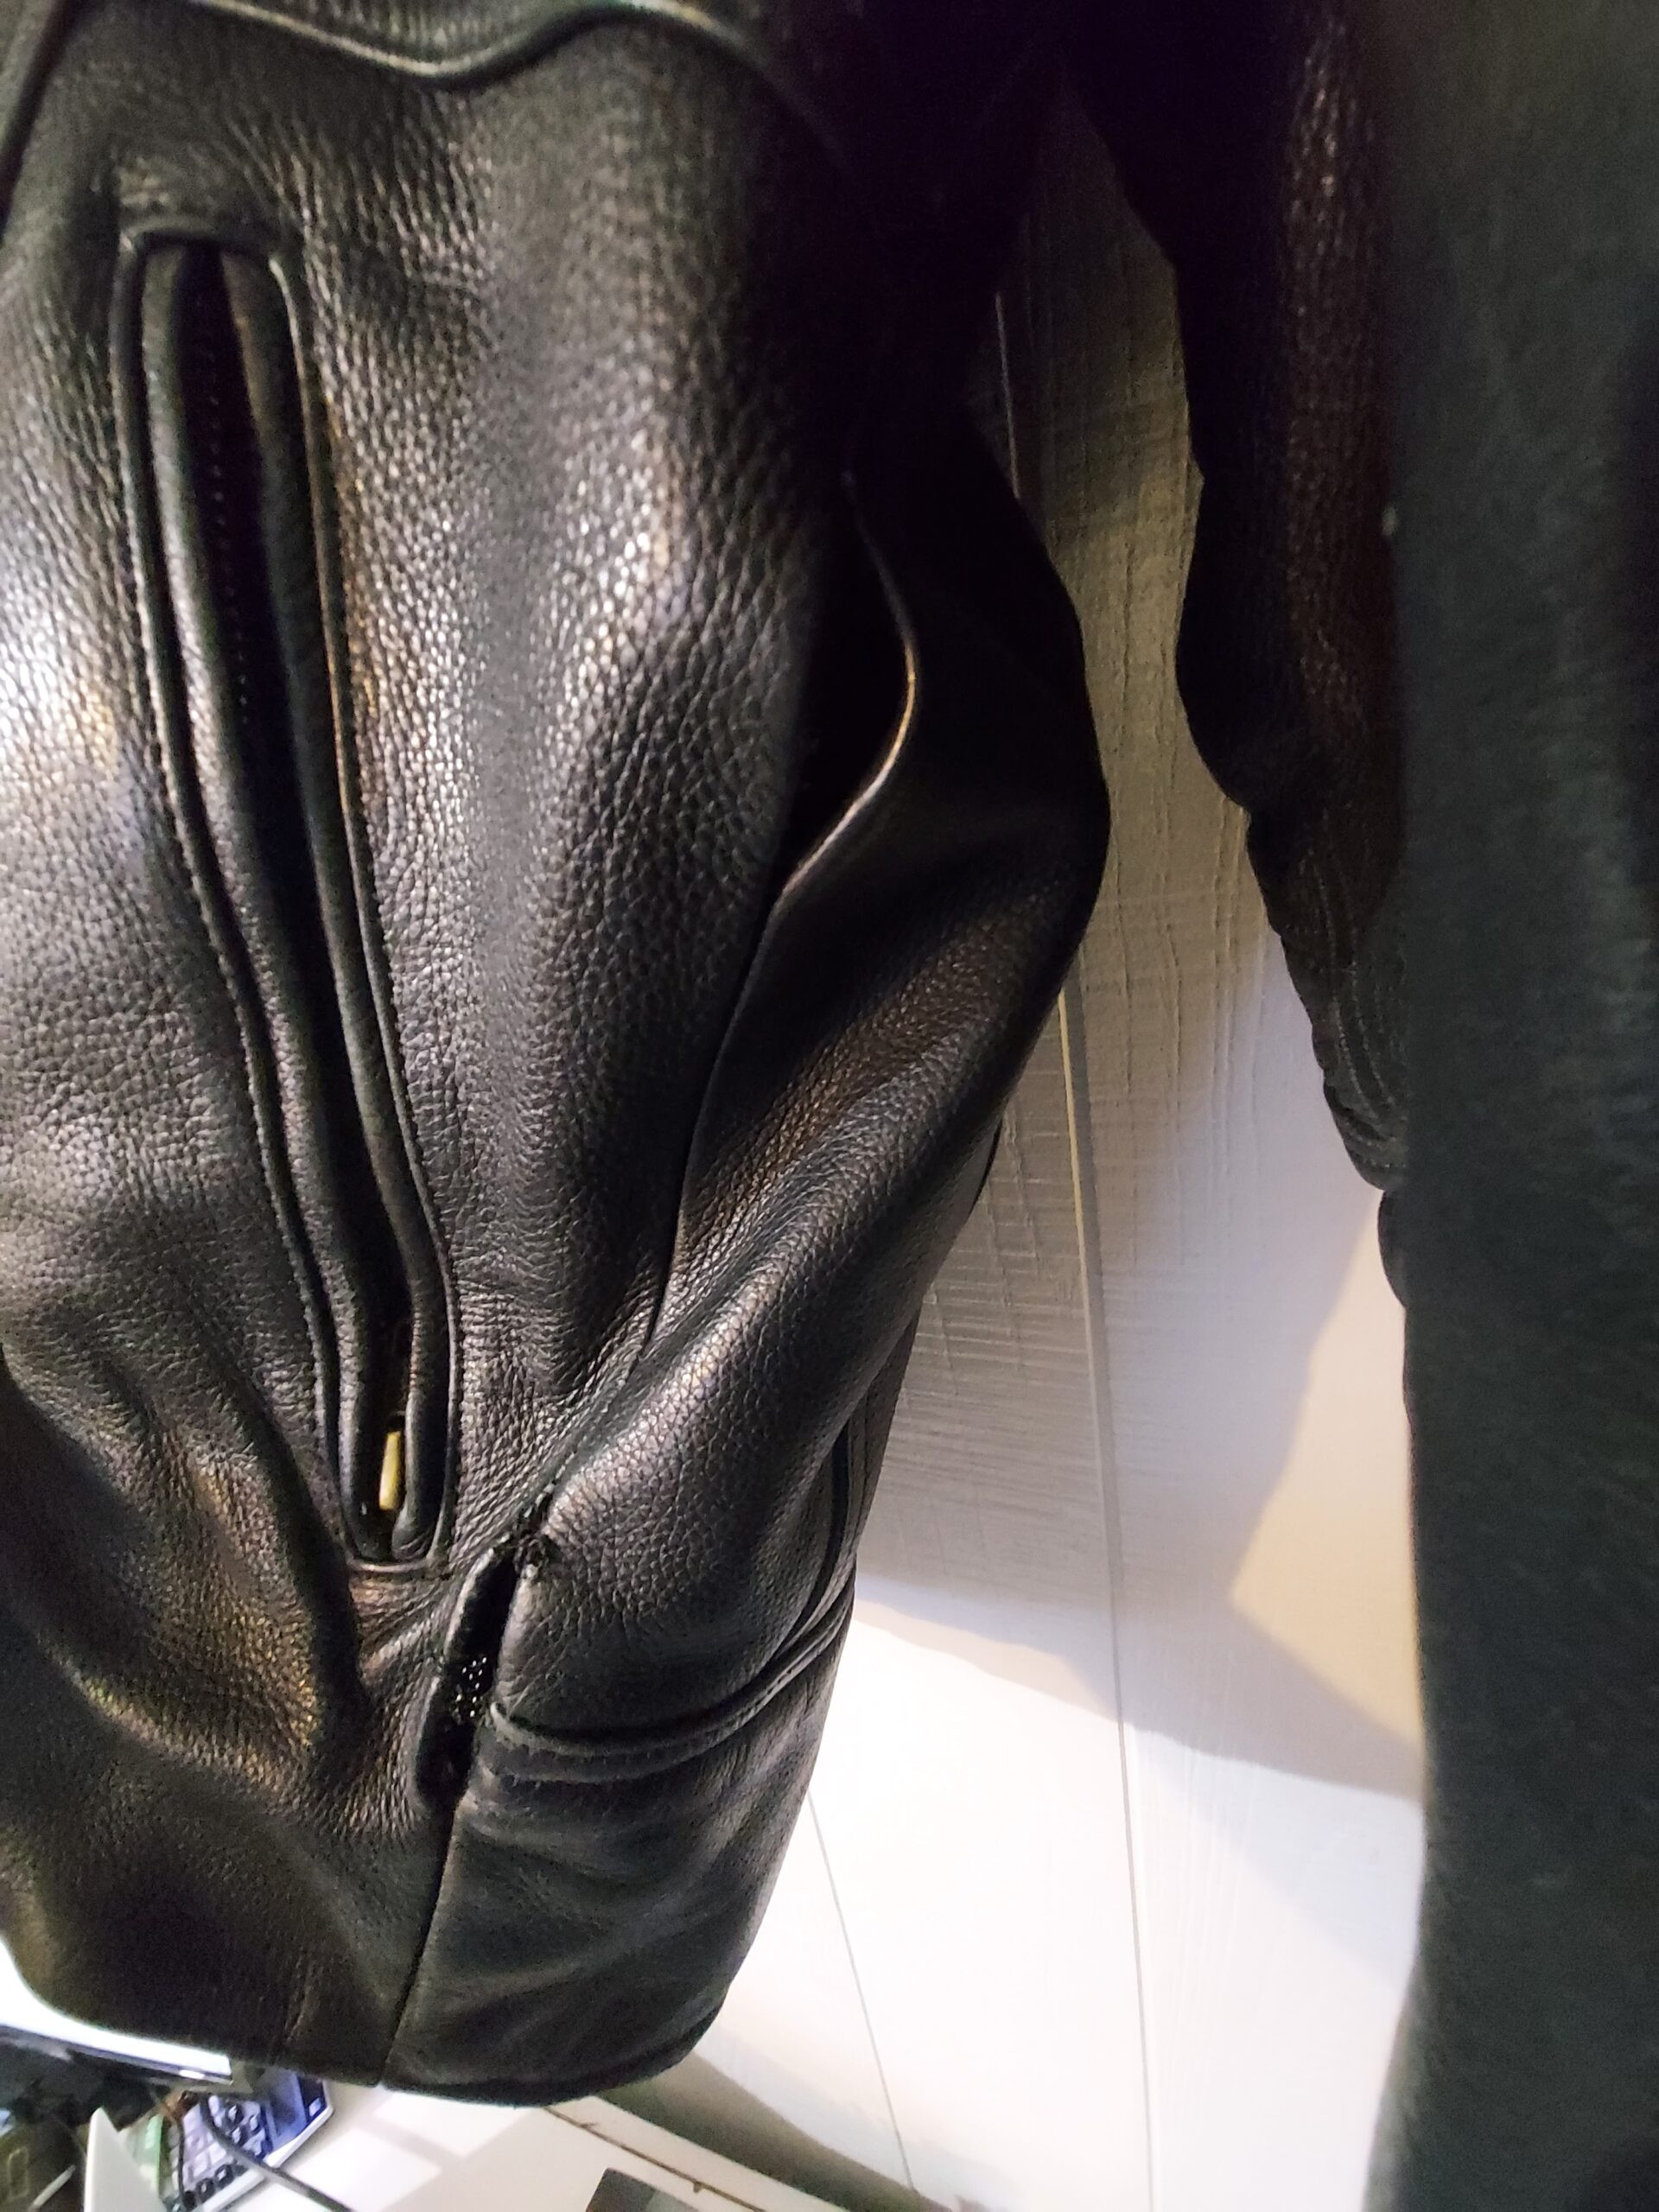 Leather Jacket repair